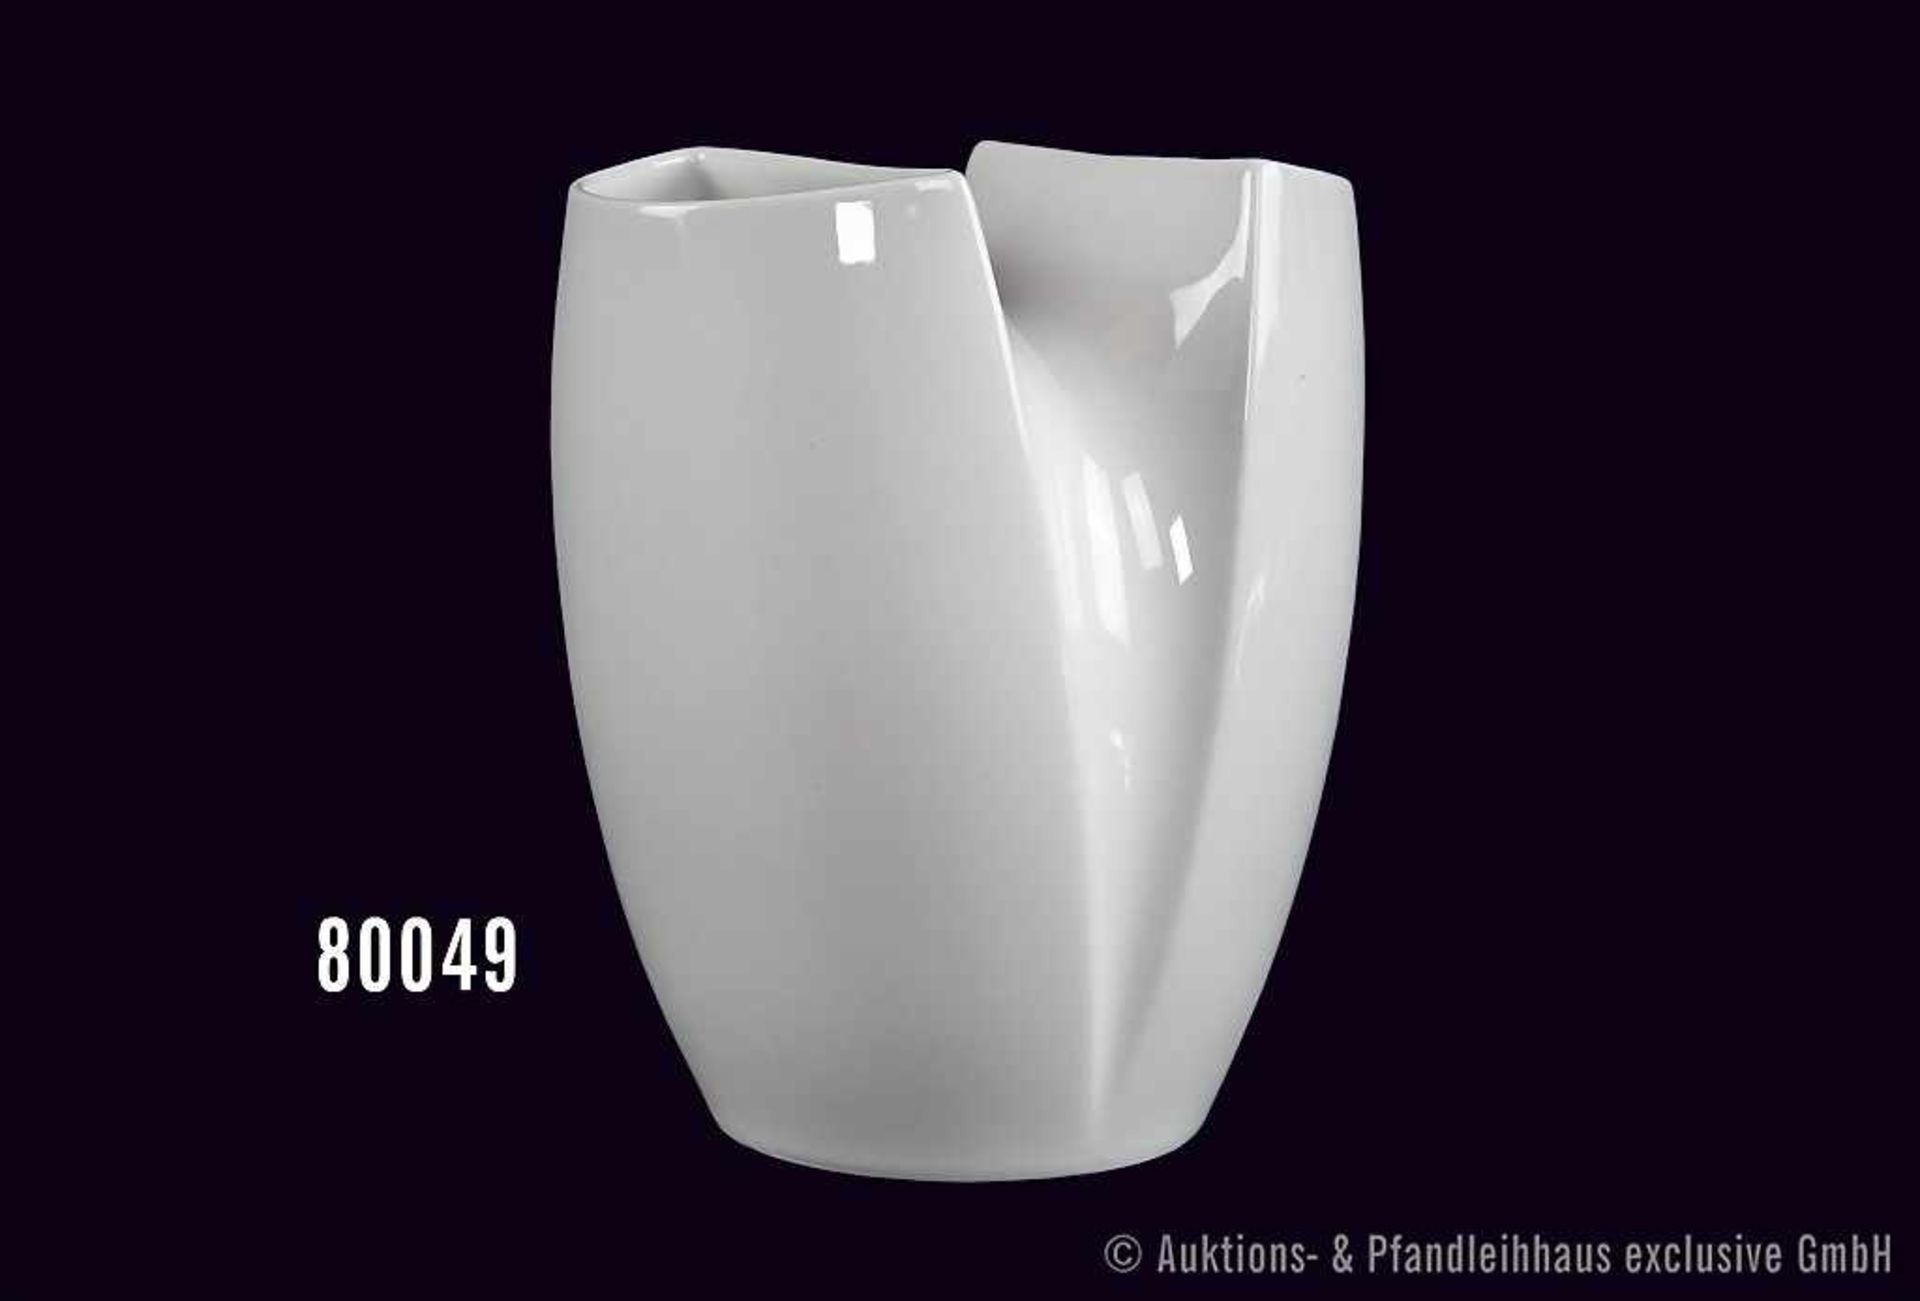 Rosenthal Porzellan Vase, studio-linie, Serie Spirit, Dekor weiß, H 17 cm, neuwertiger Zustand in